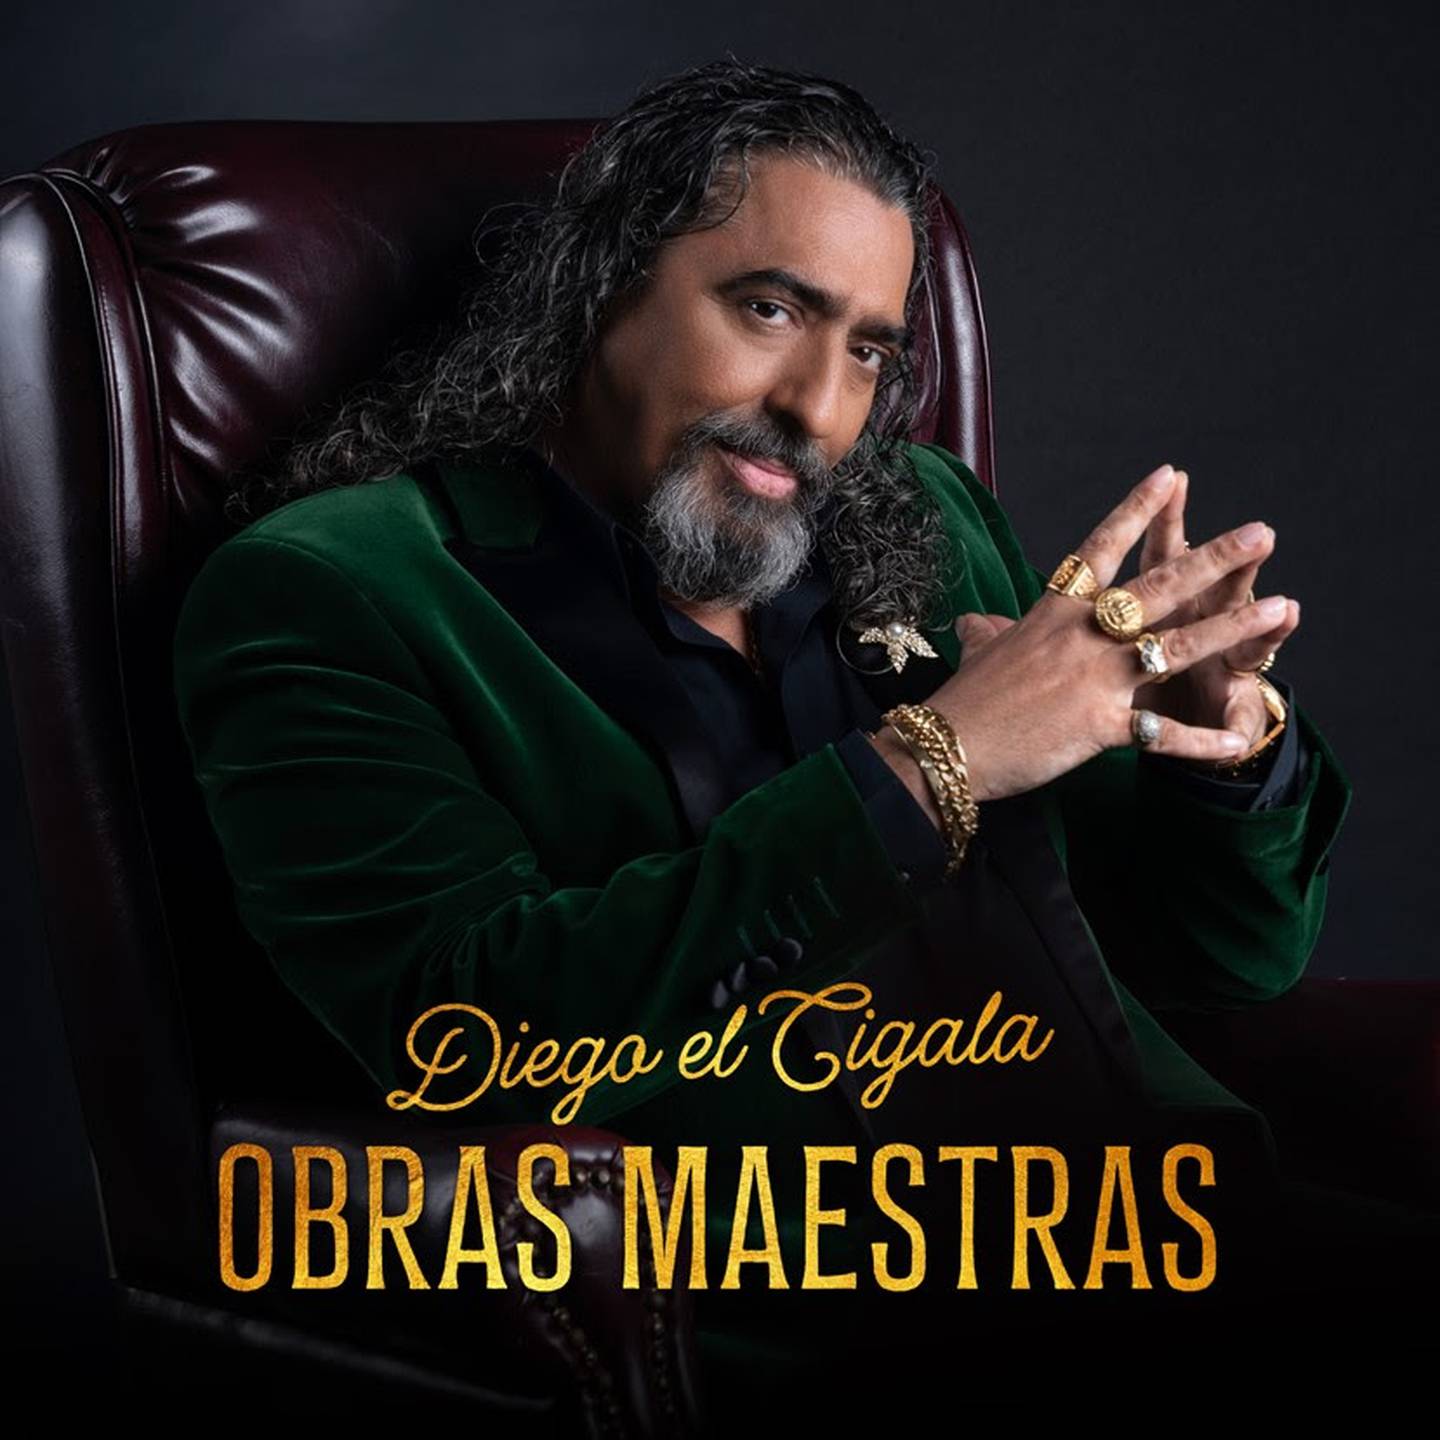 En su disco 'Obras maestras' Diego El Cigala canta boleros de Armando Manzanero y otros artistas latinoamericanos.